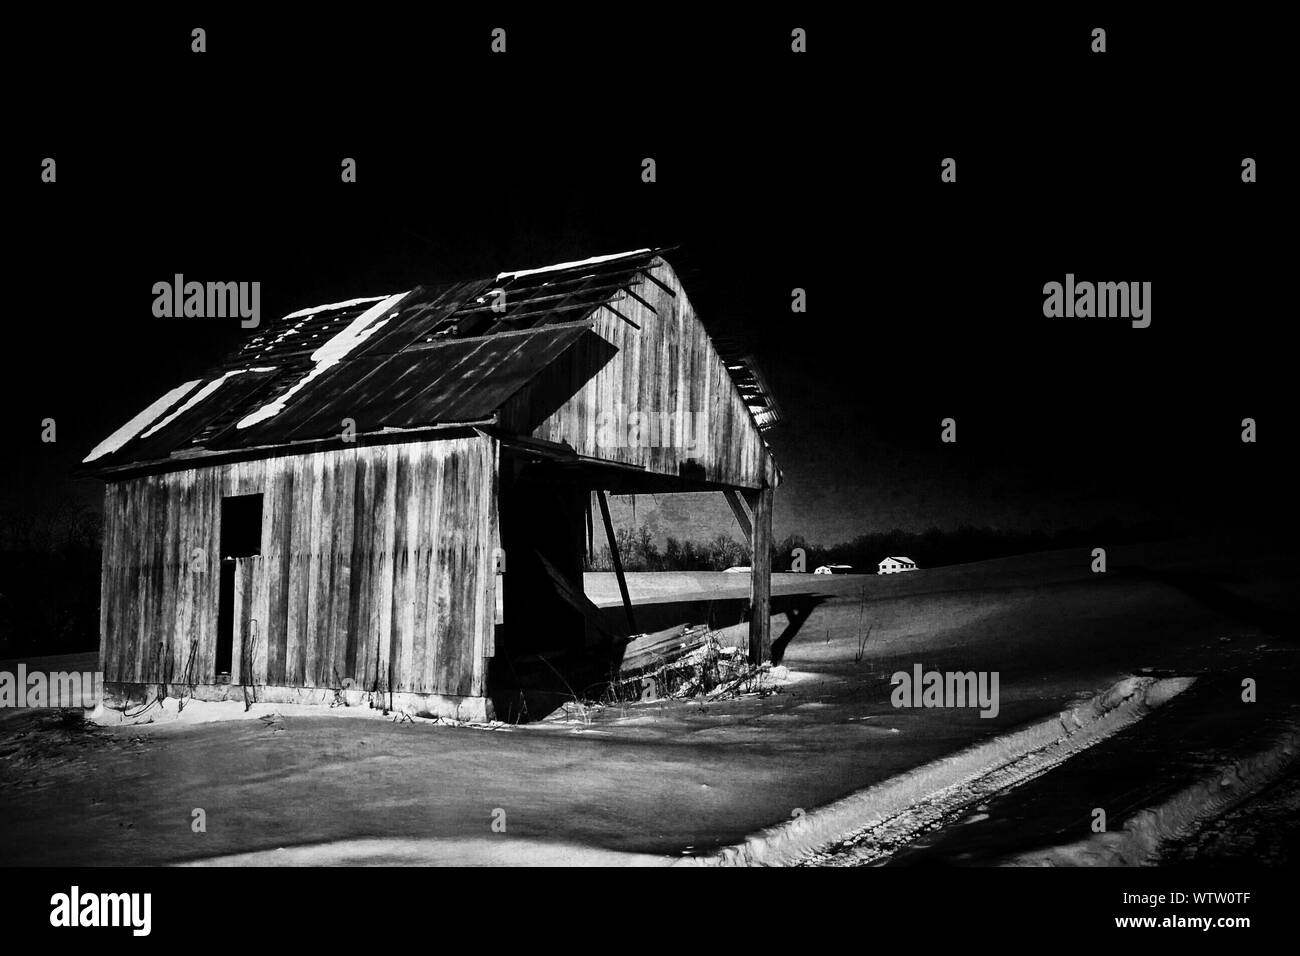 Abandoned Cottage At Night Stock Photo